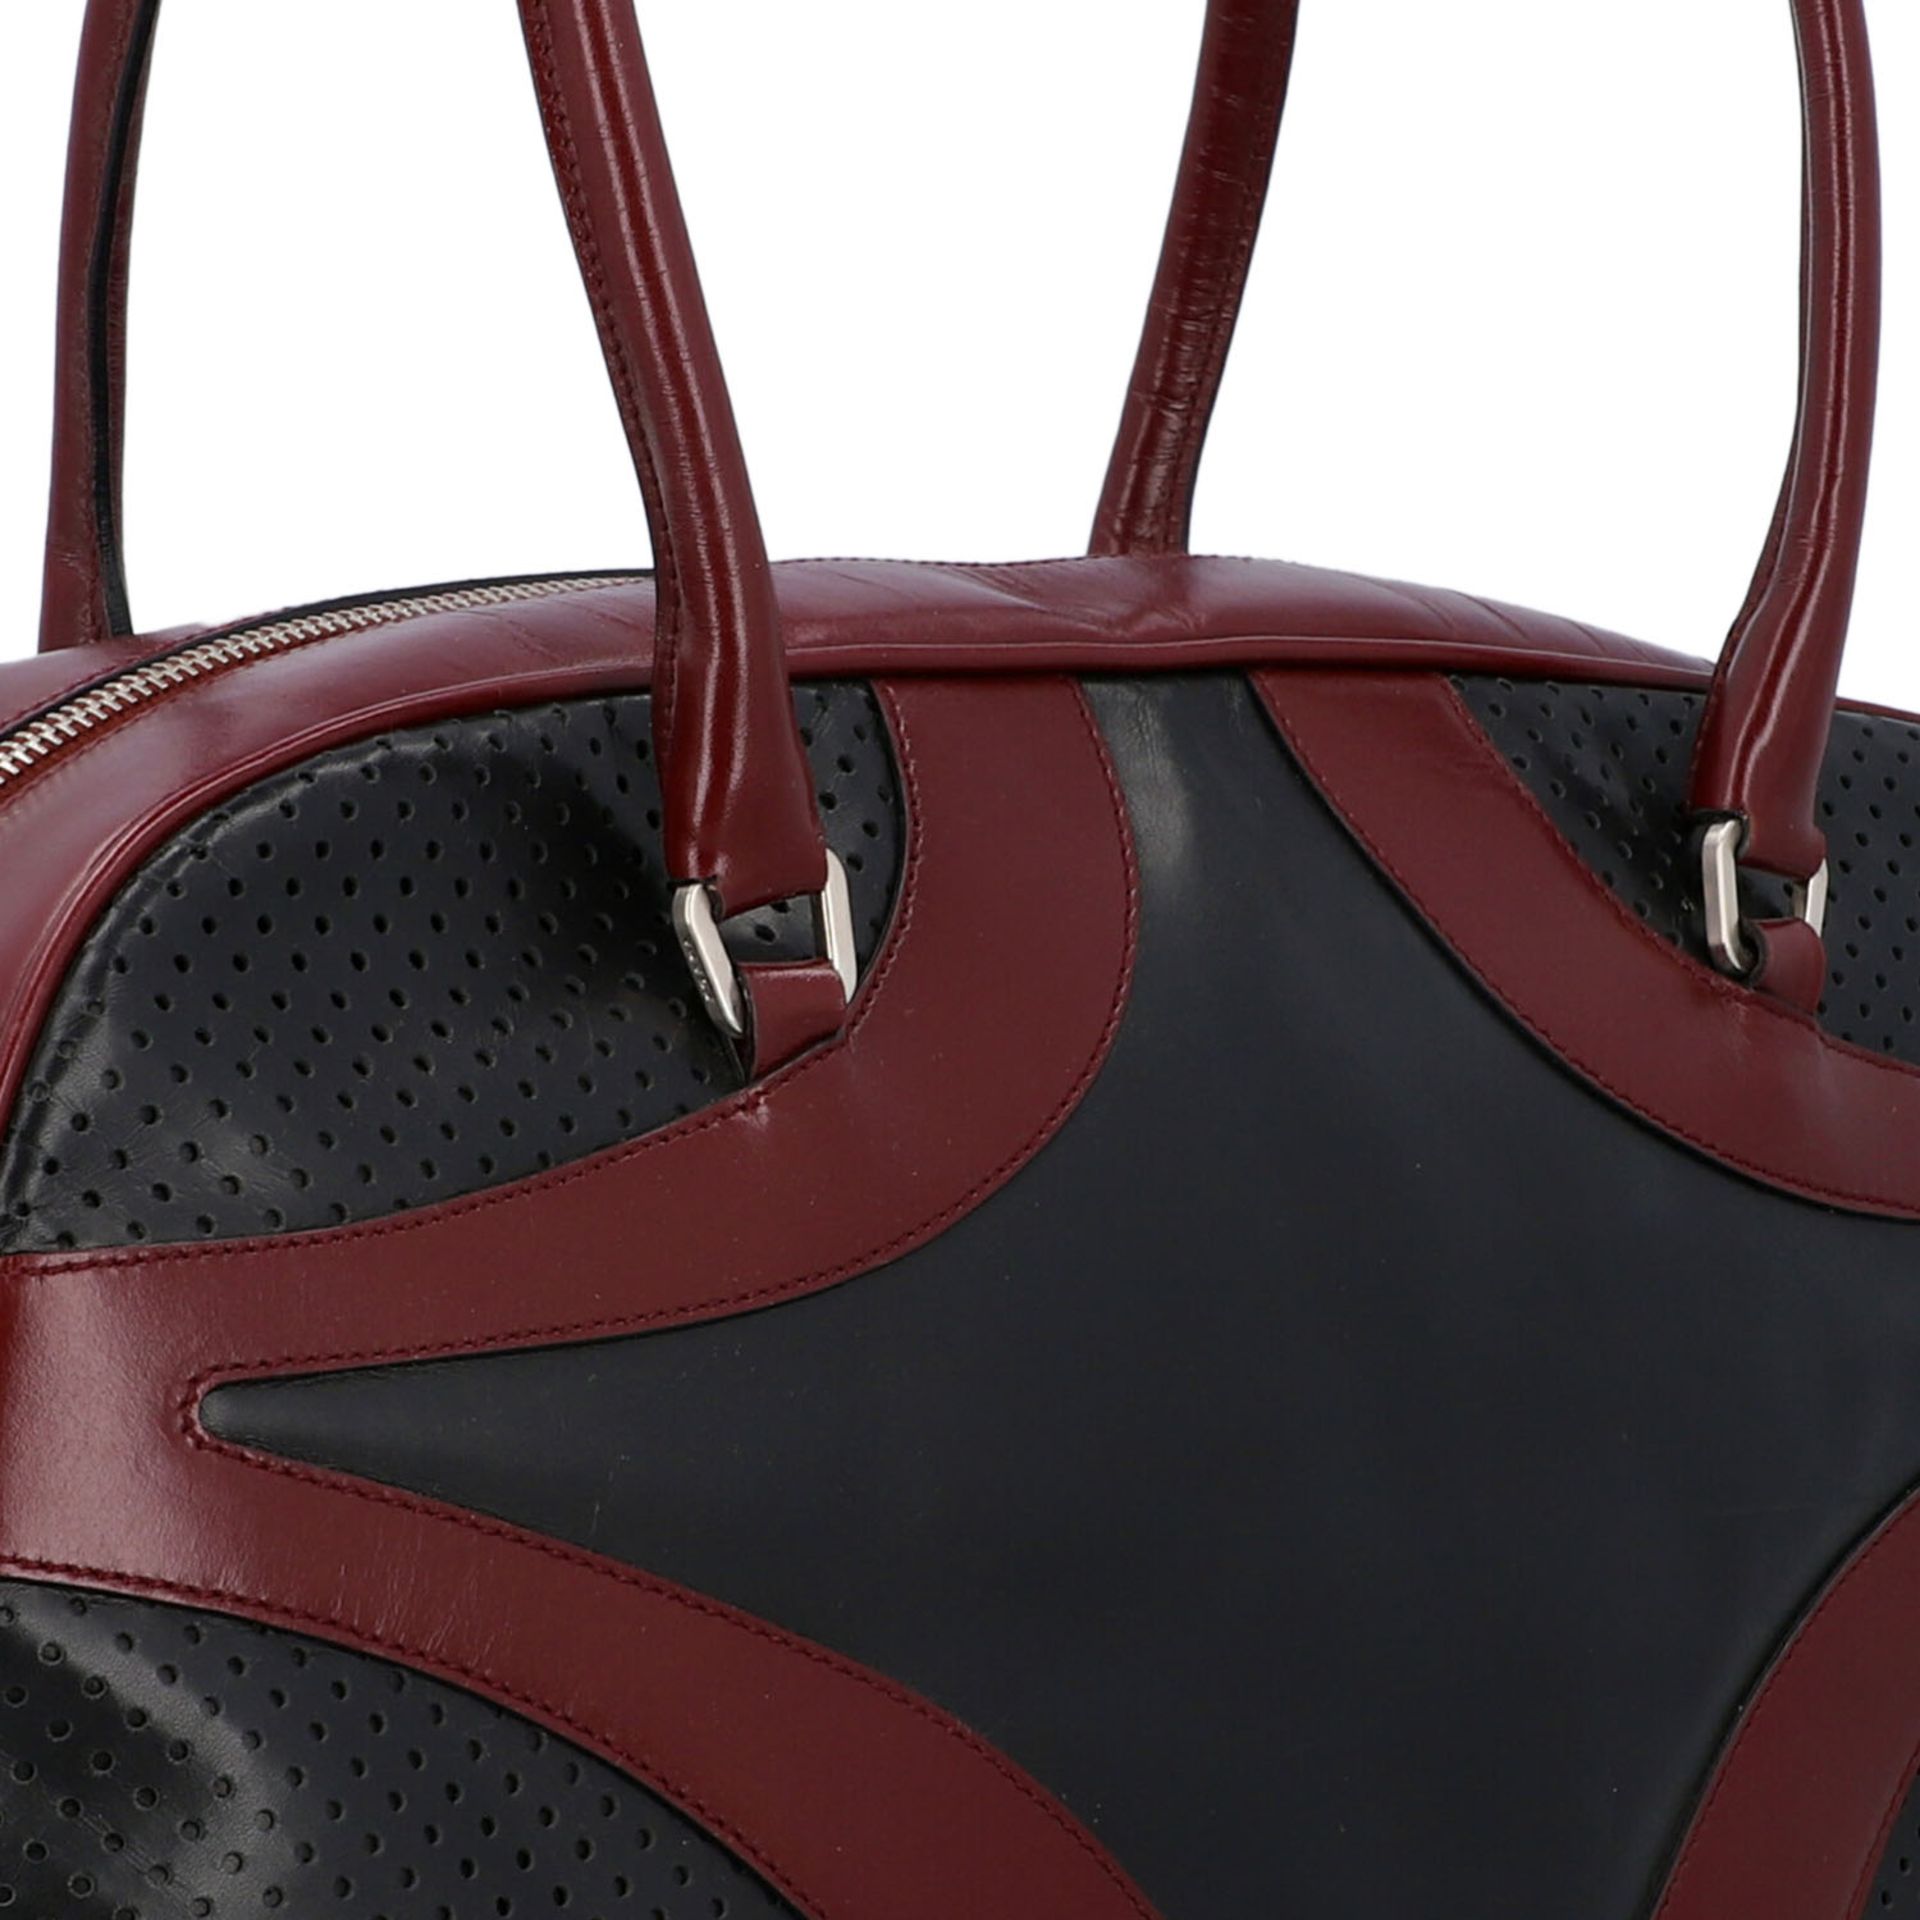 PRADA Handtasche. Glattleder in Schwarz und Bordeaux mit silberfarbener Hardware, umla - Bild 8 aus 8